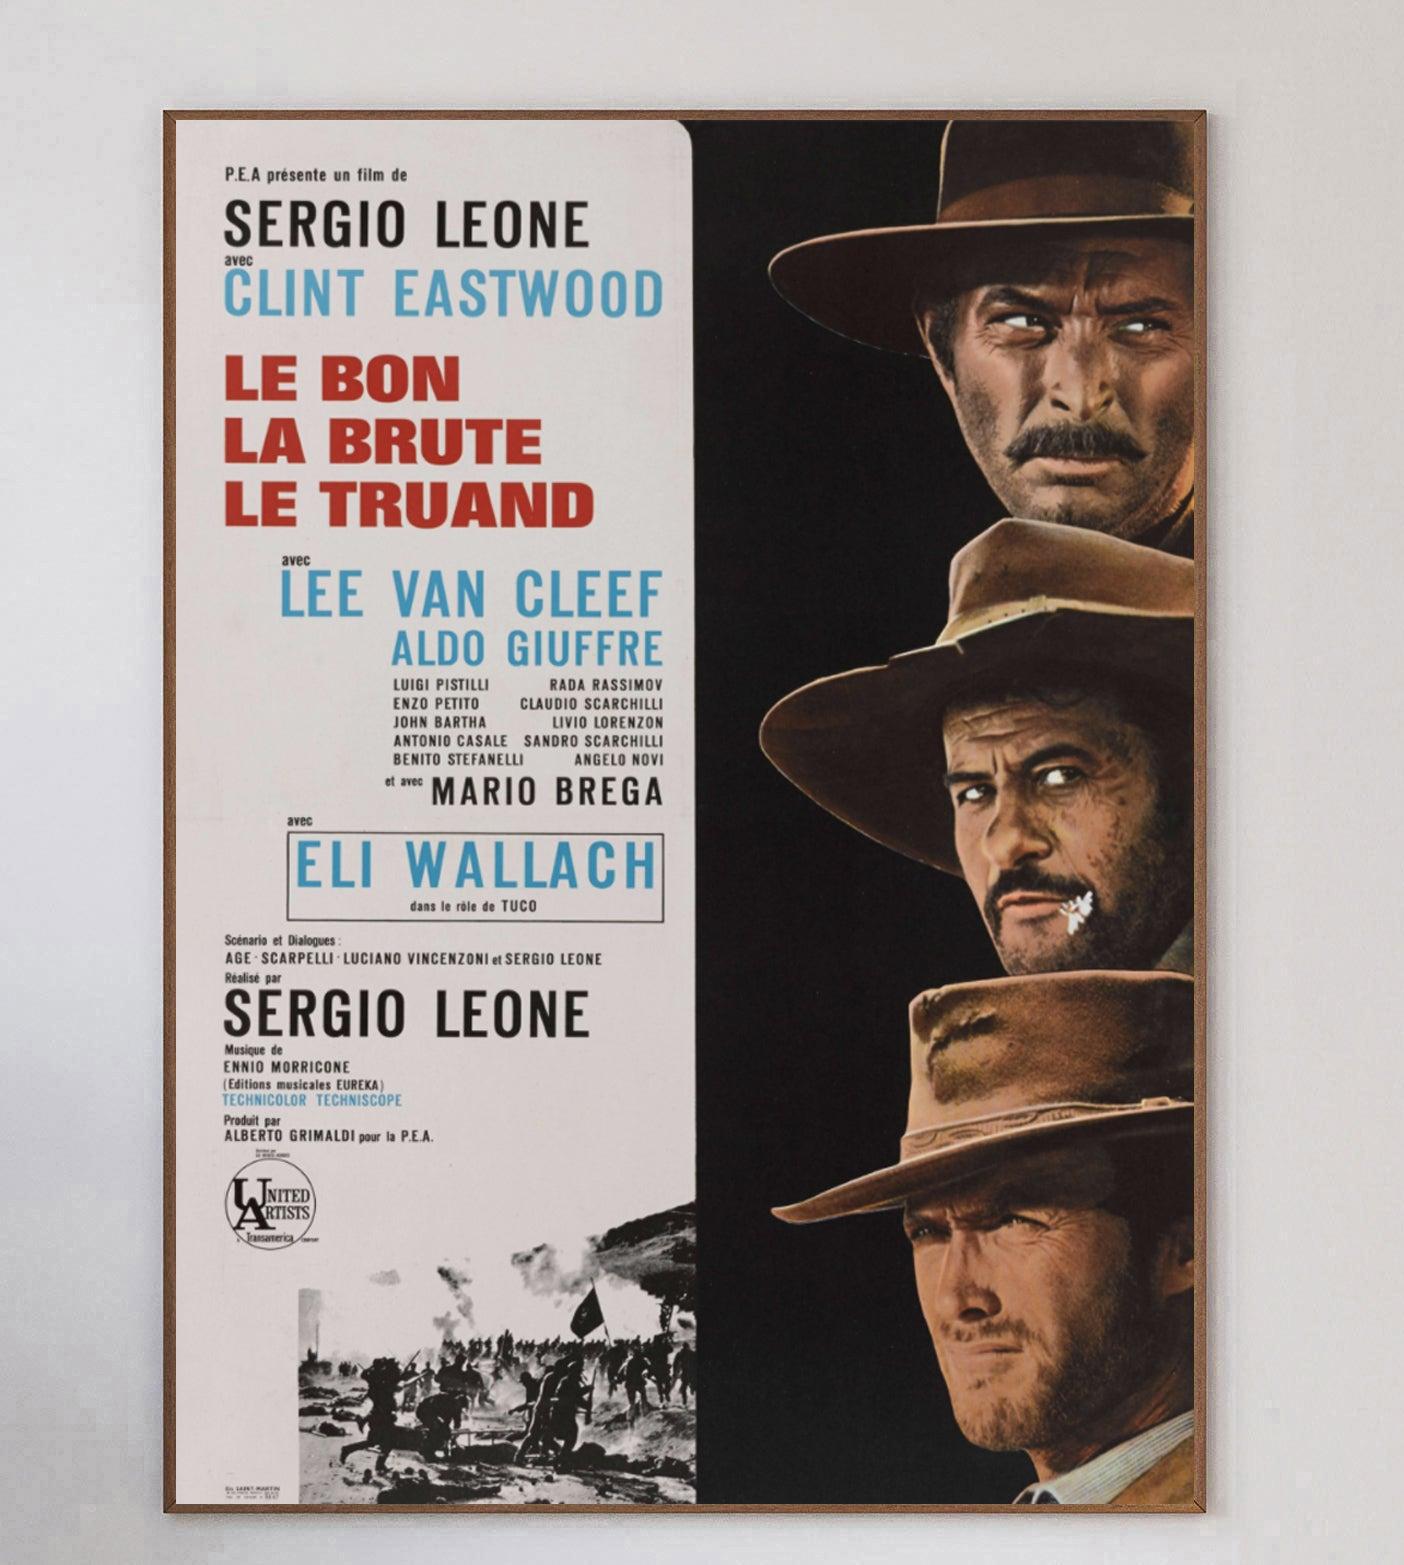 Le bon, la brute et le truand est un western spaghetti épique italien de 1966 réalisé par Sergio Leone avec Clint Eastwood dans le rôle du bon, Lee Van Cleef dans celui de la brute et Eli Wallach dans celui du truand. Le dernier film de la désormais